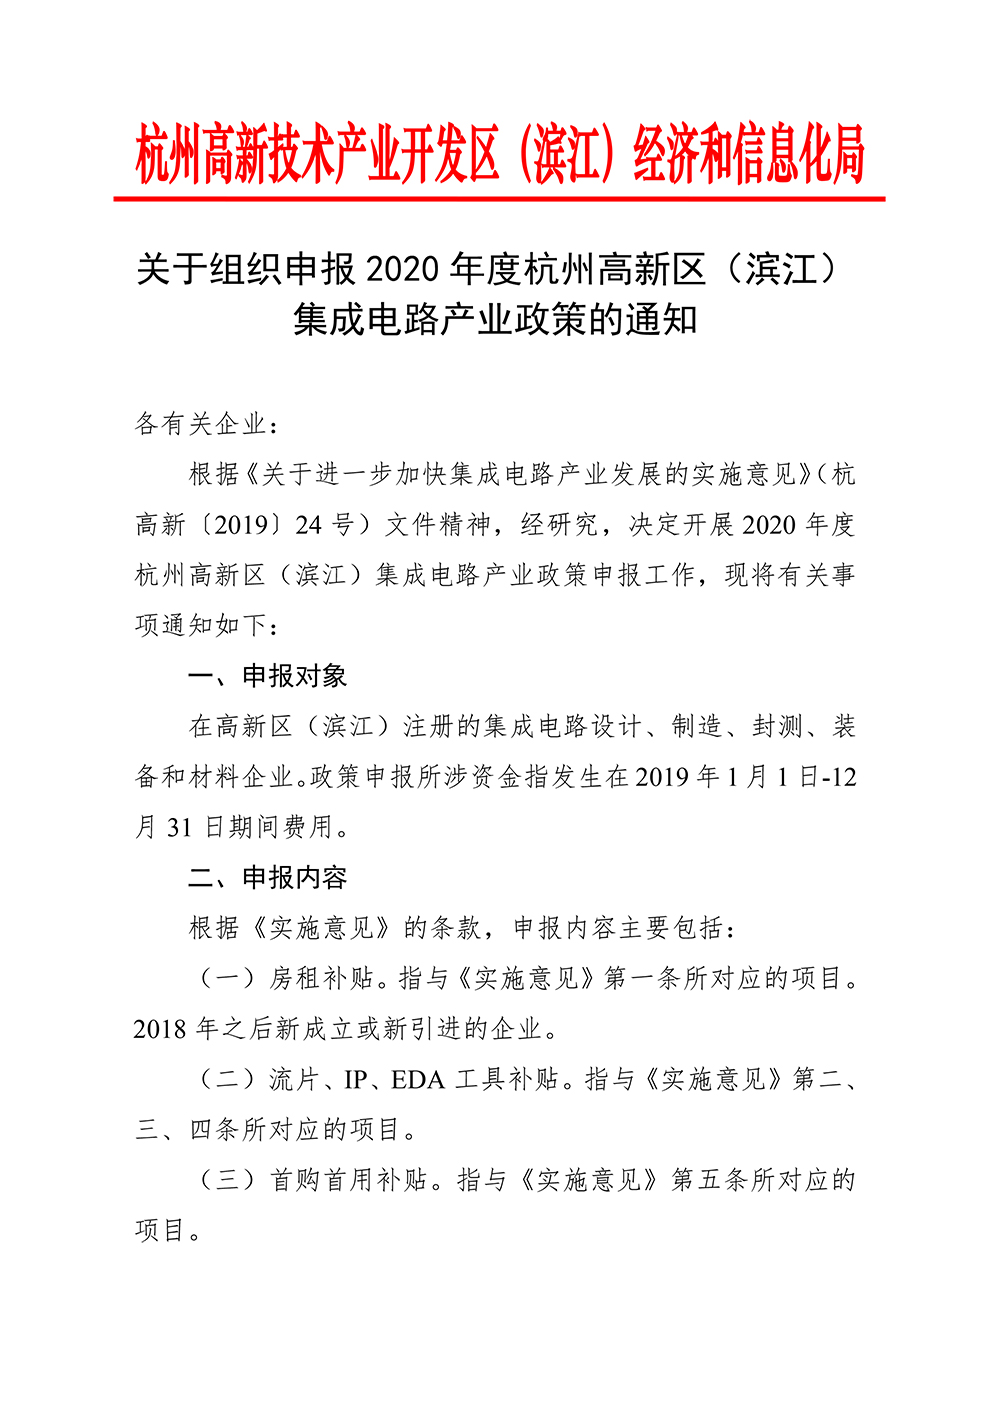 关于组织申报2020年度杭州高新区（滨江）集成电路产业政策的通知_20200622170739-1.jpg